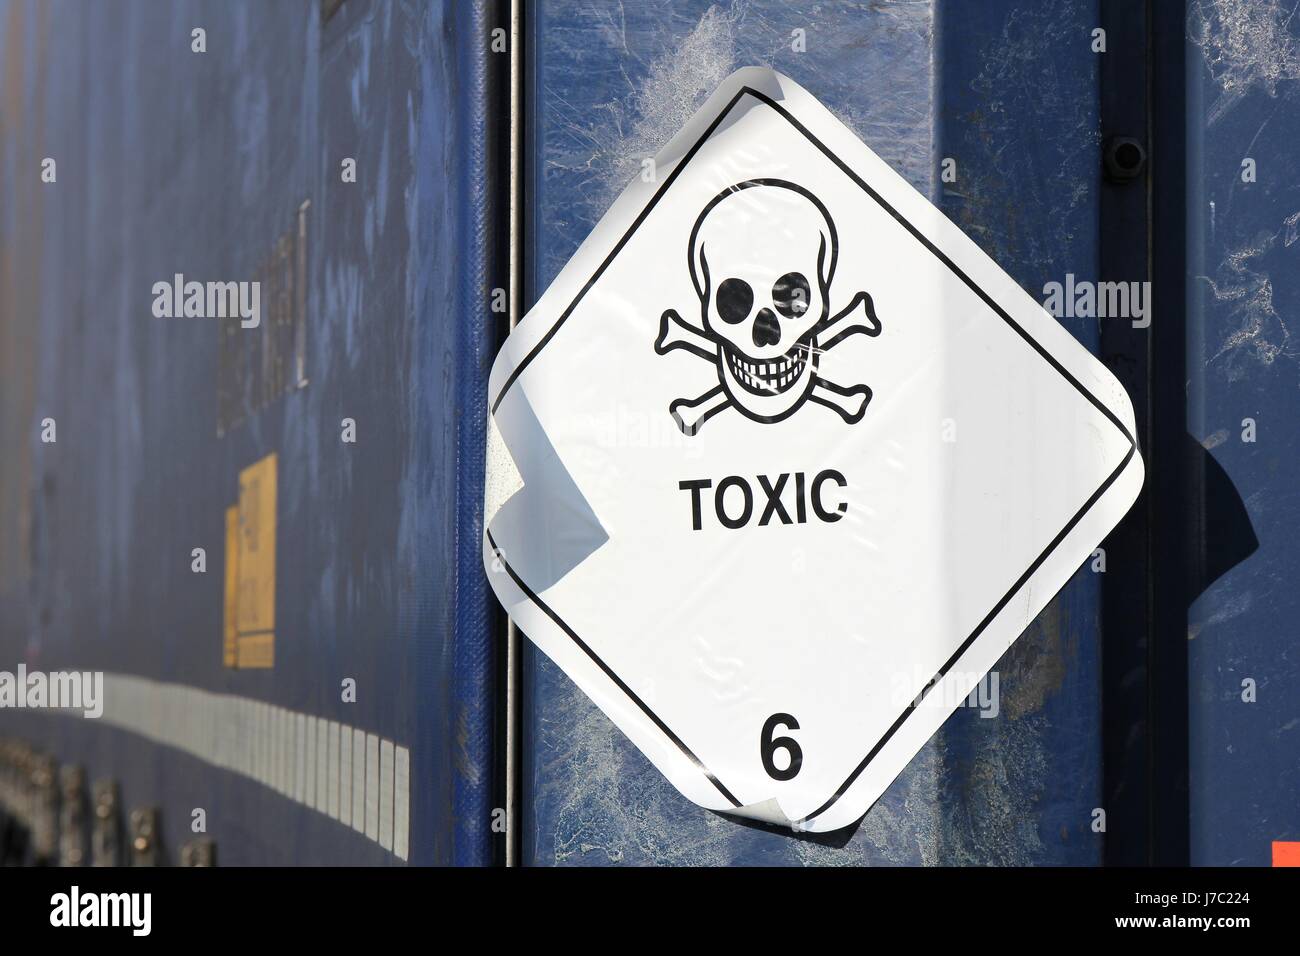 Piktogramm für chemische Gefahren - giftige Stoffe Stockfotografie - Alamy